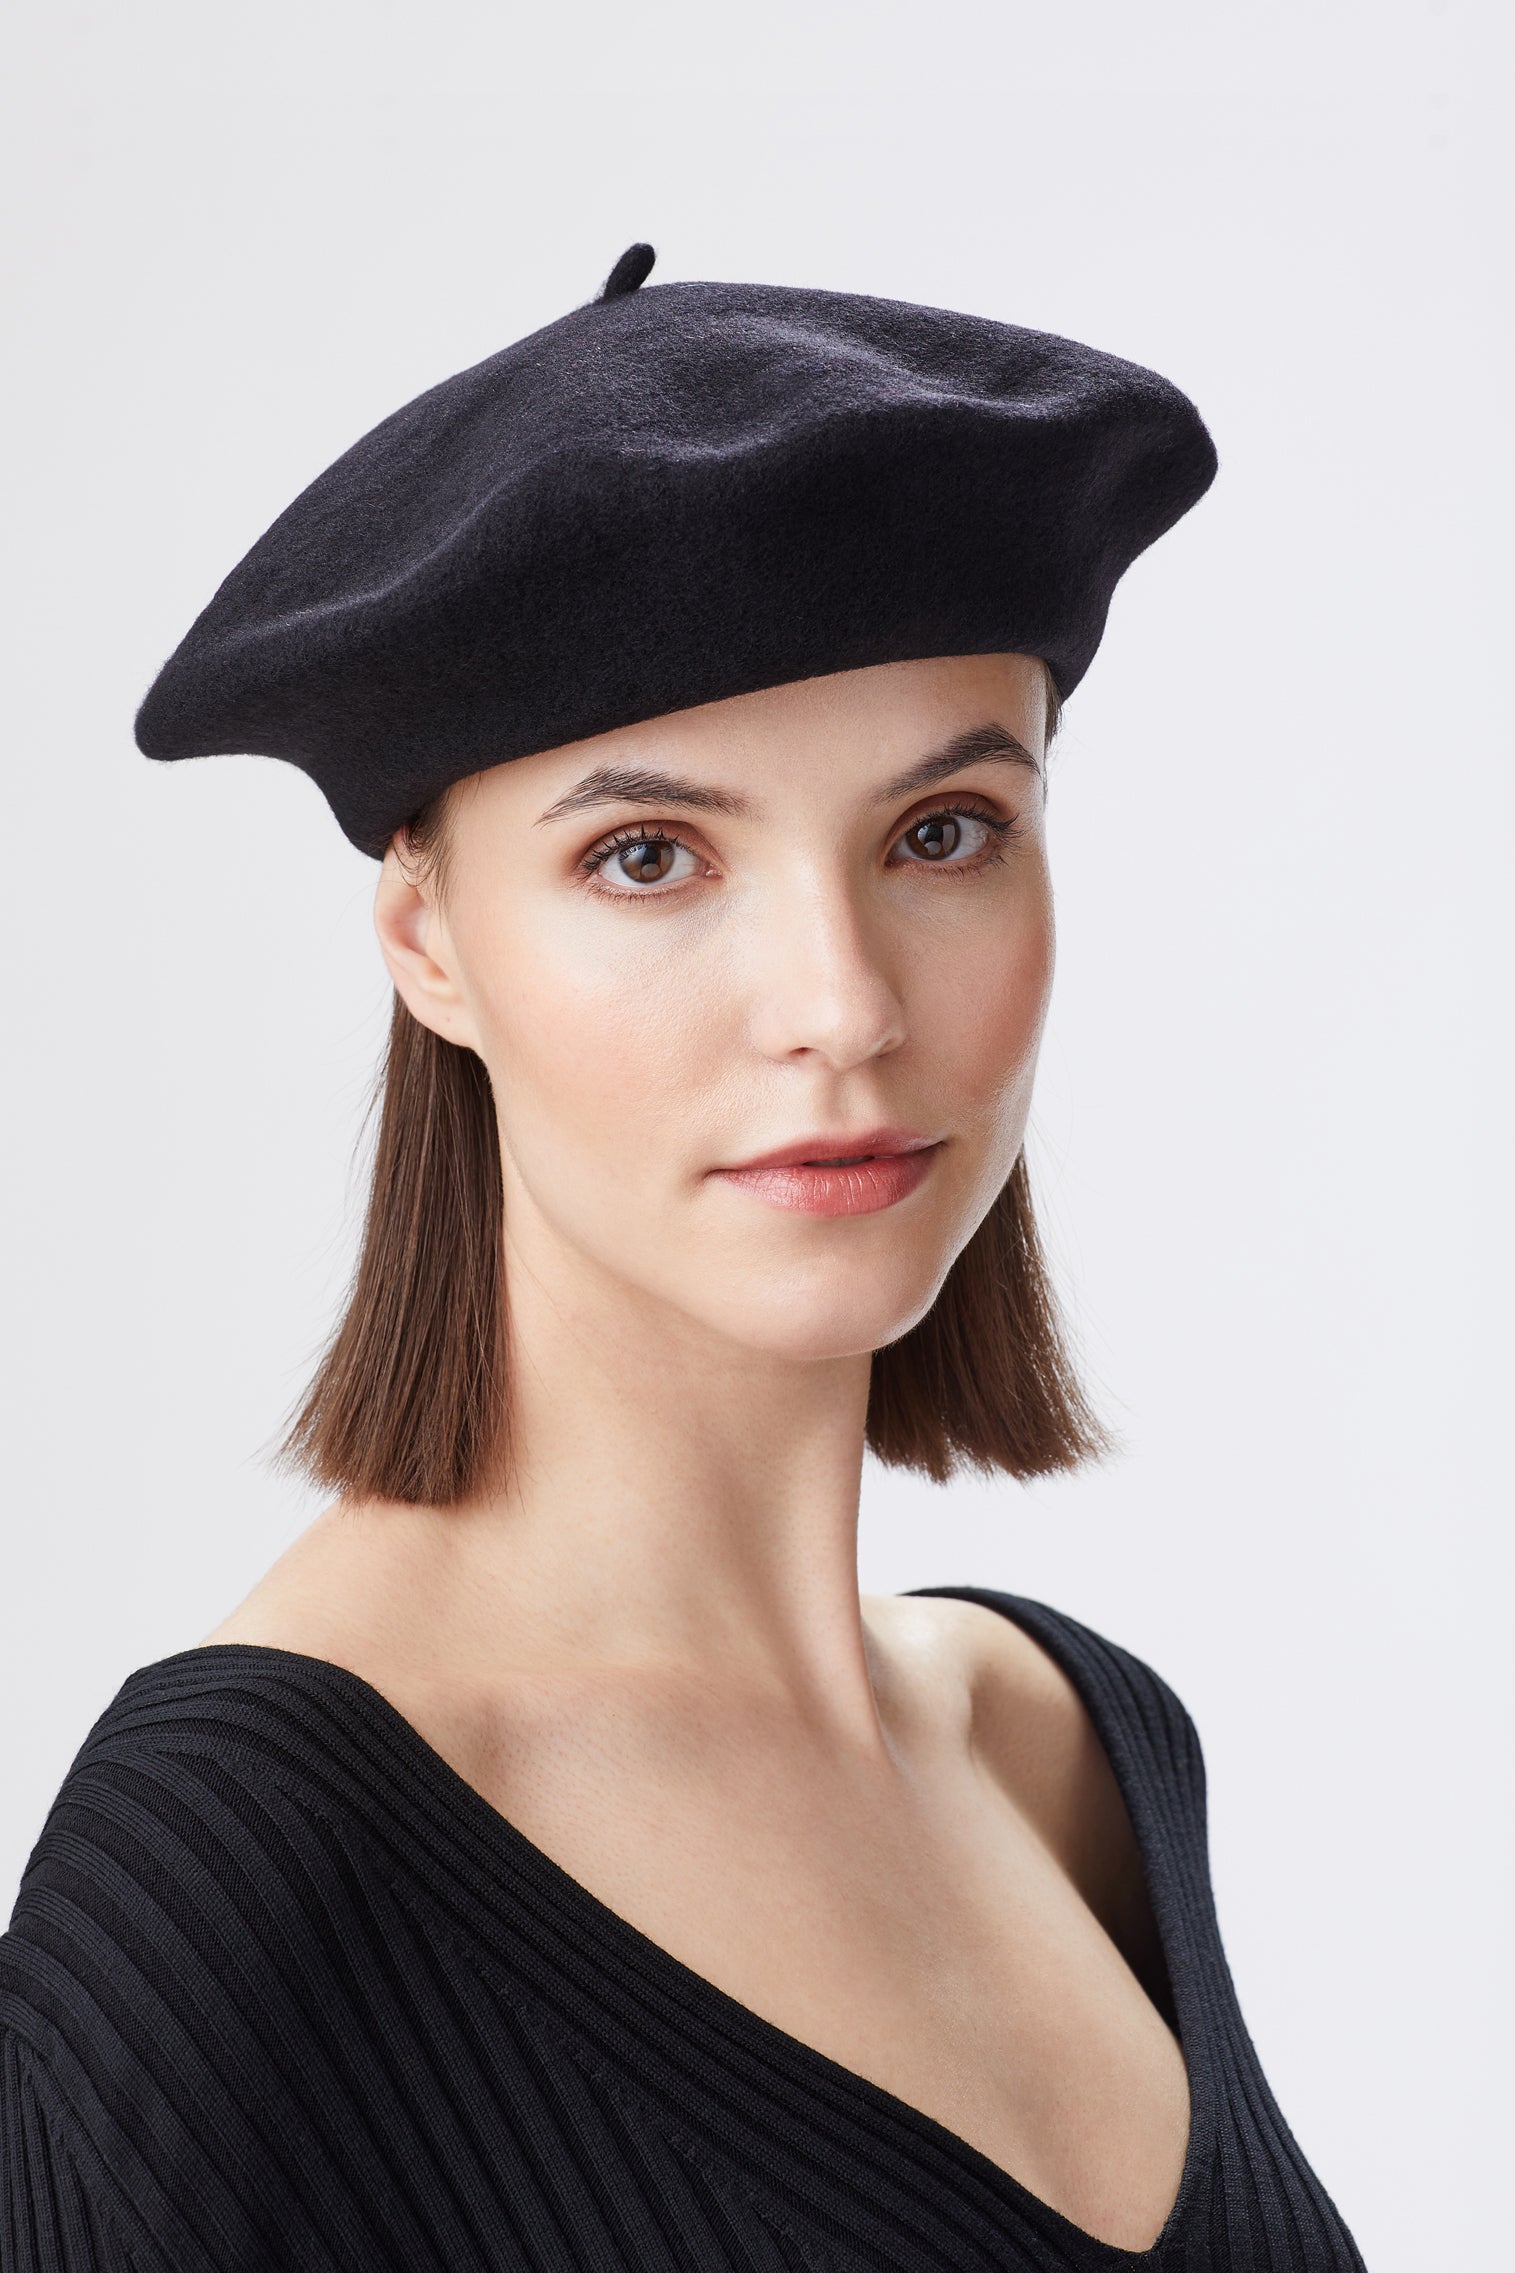 French Beret - Women’s Hats - Lock & Co. Hatters London UK